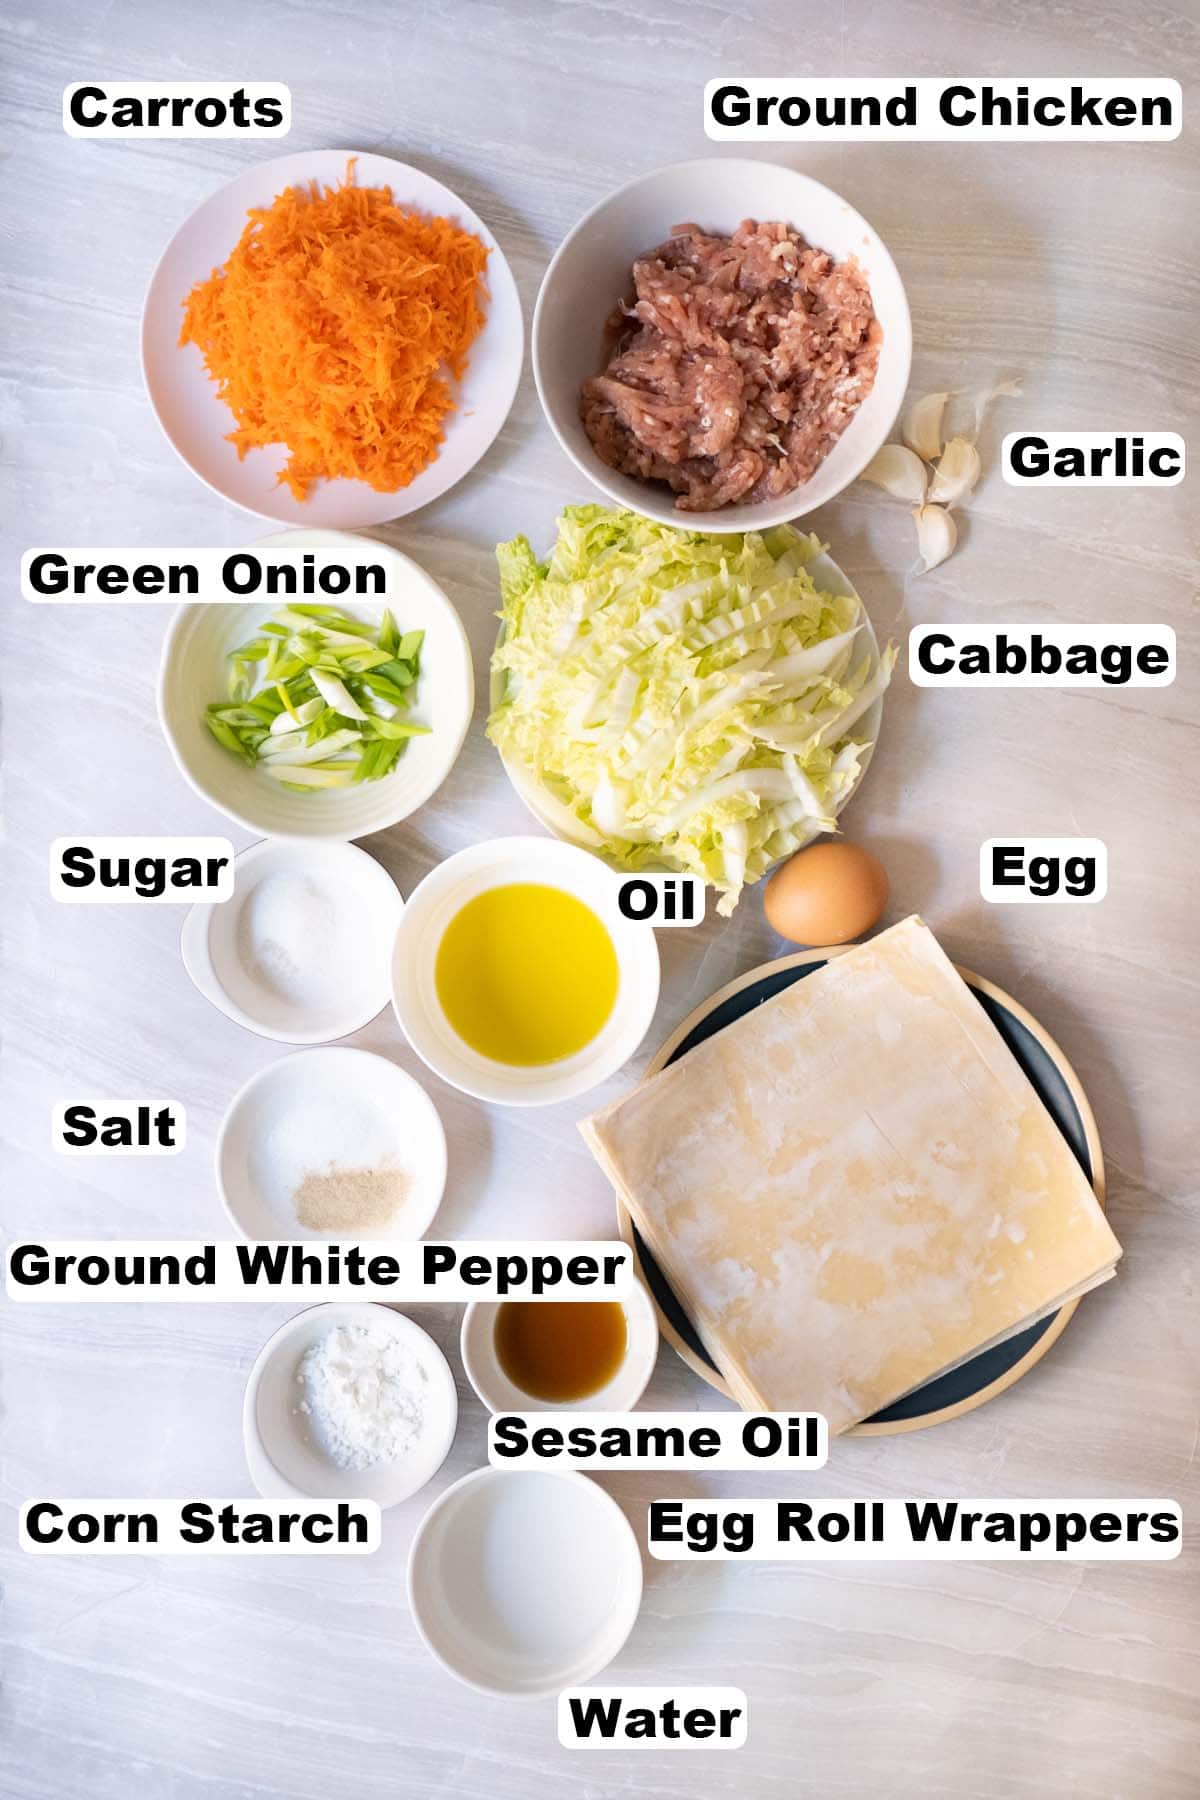 Chicken egg rolls ingredients. 